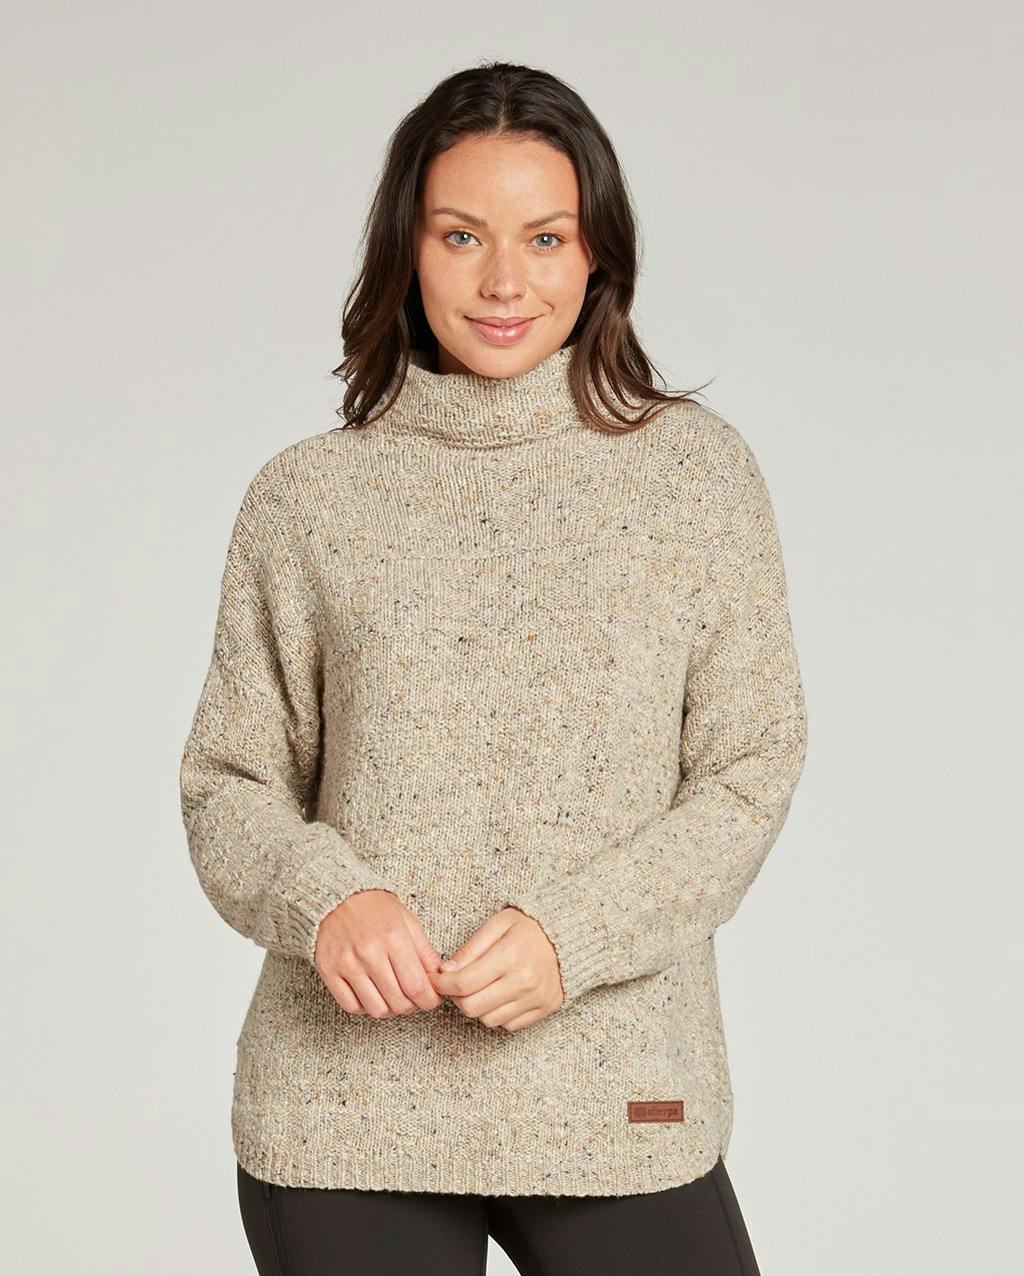 Sherpa Adventure Gear Women's Yuden Pullover Sweater